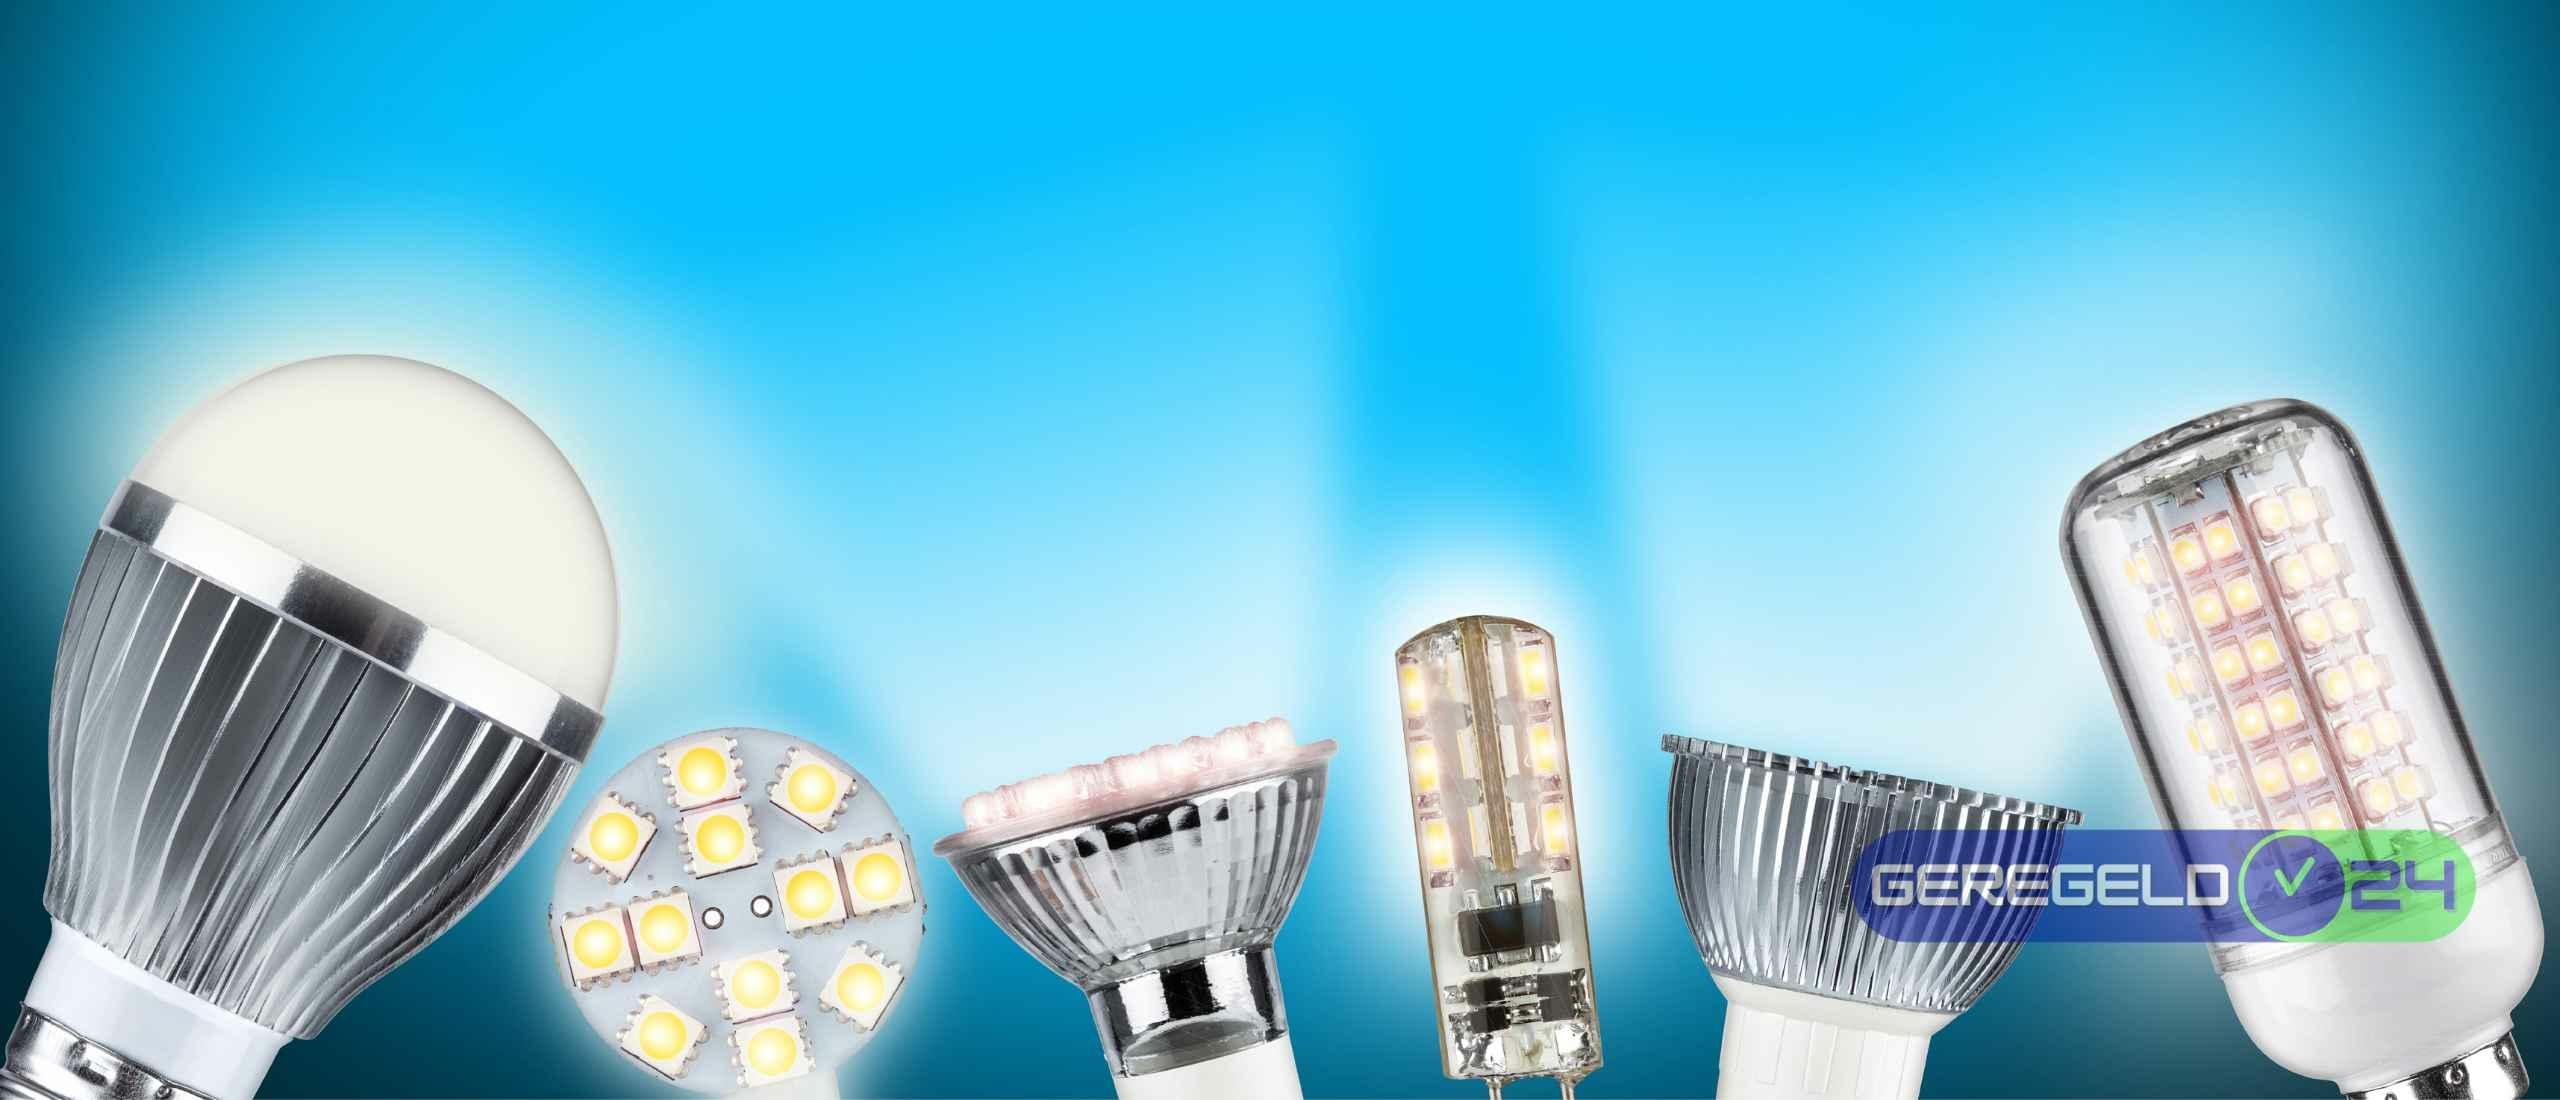 LED-verlichting: De voordelen en nadelen op een rij - Geregeld24